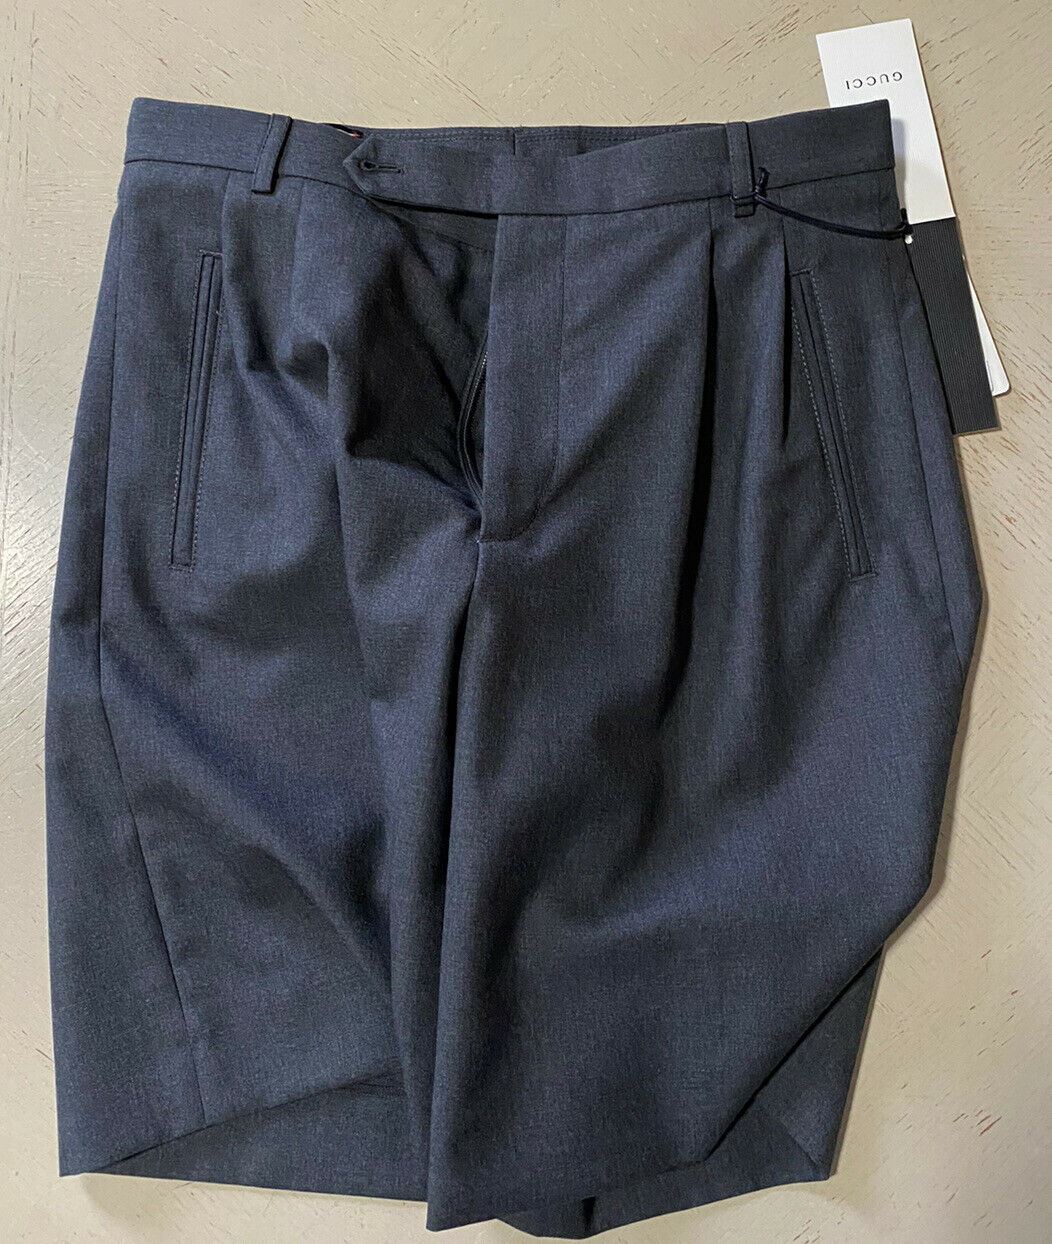 Мужские короткие брюки Gucci DK, серые, размер 30, США (46 ЕС), Италия, NWT 790 долларов США